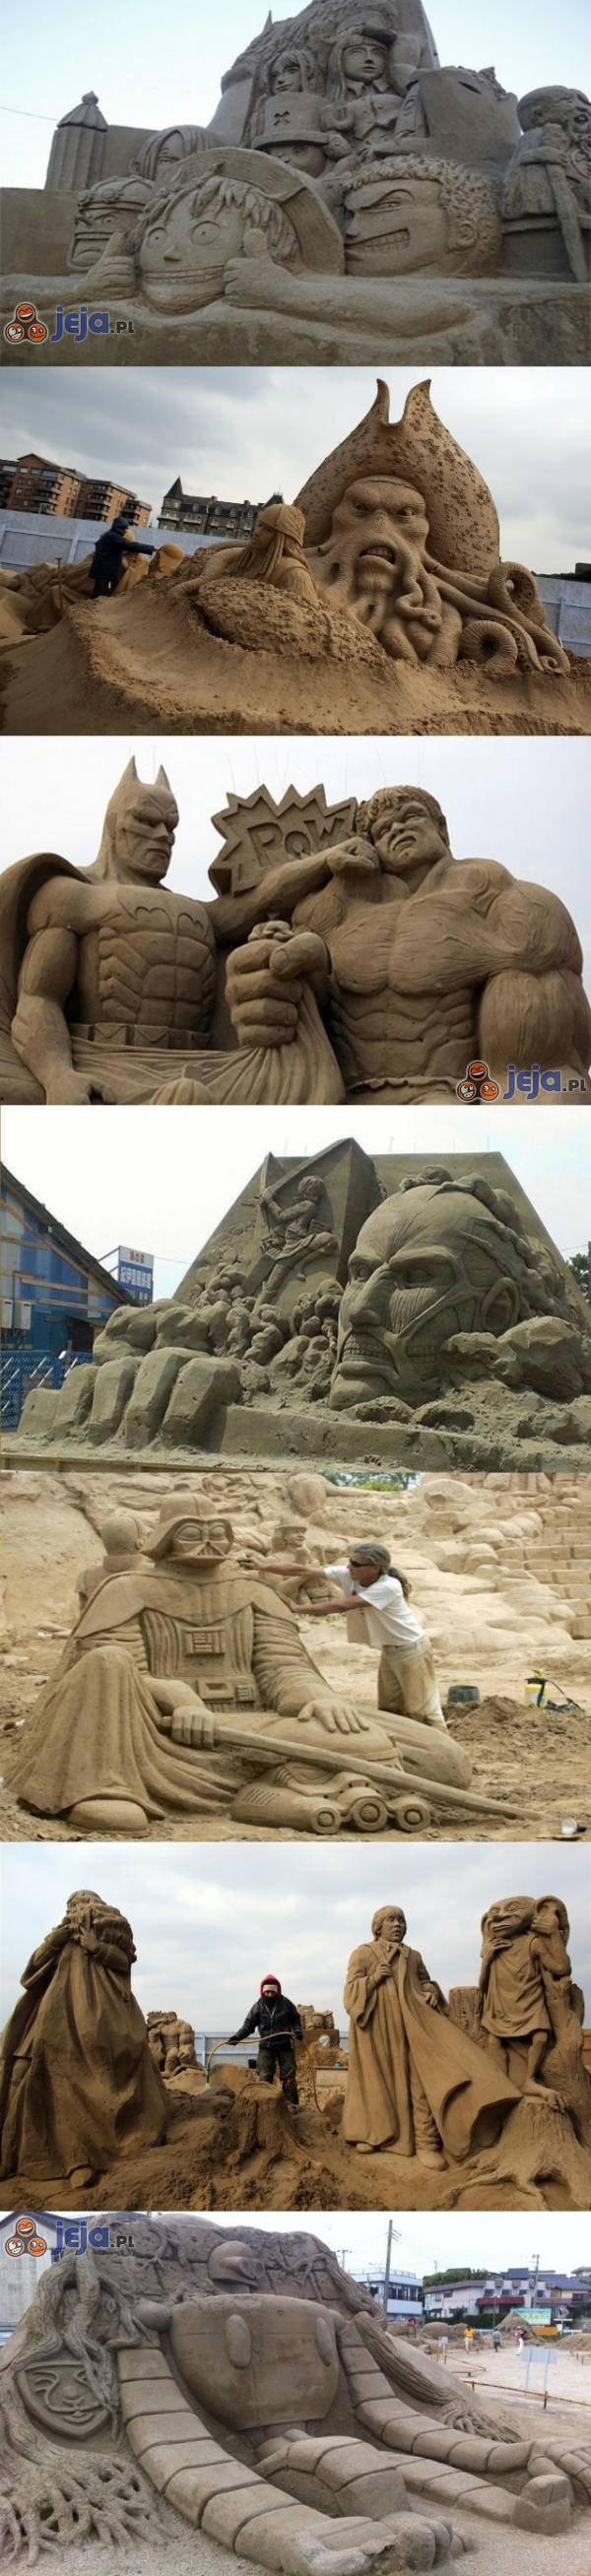 Rzeźby w piasku